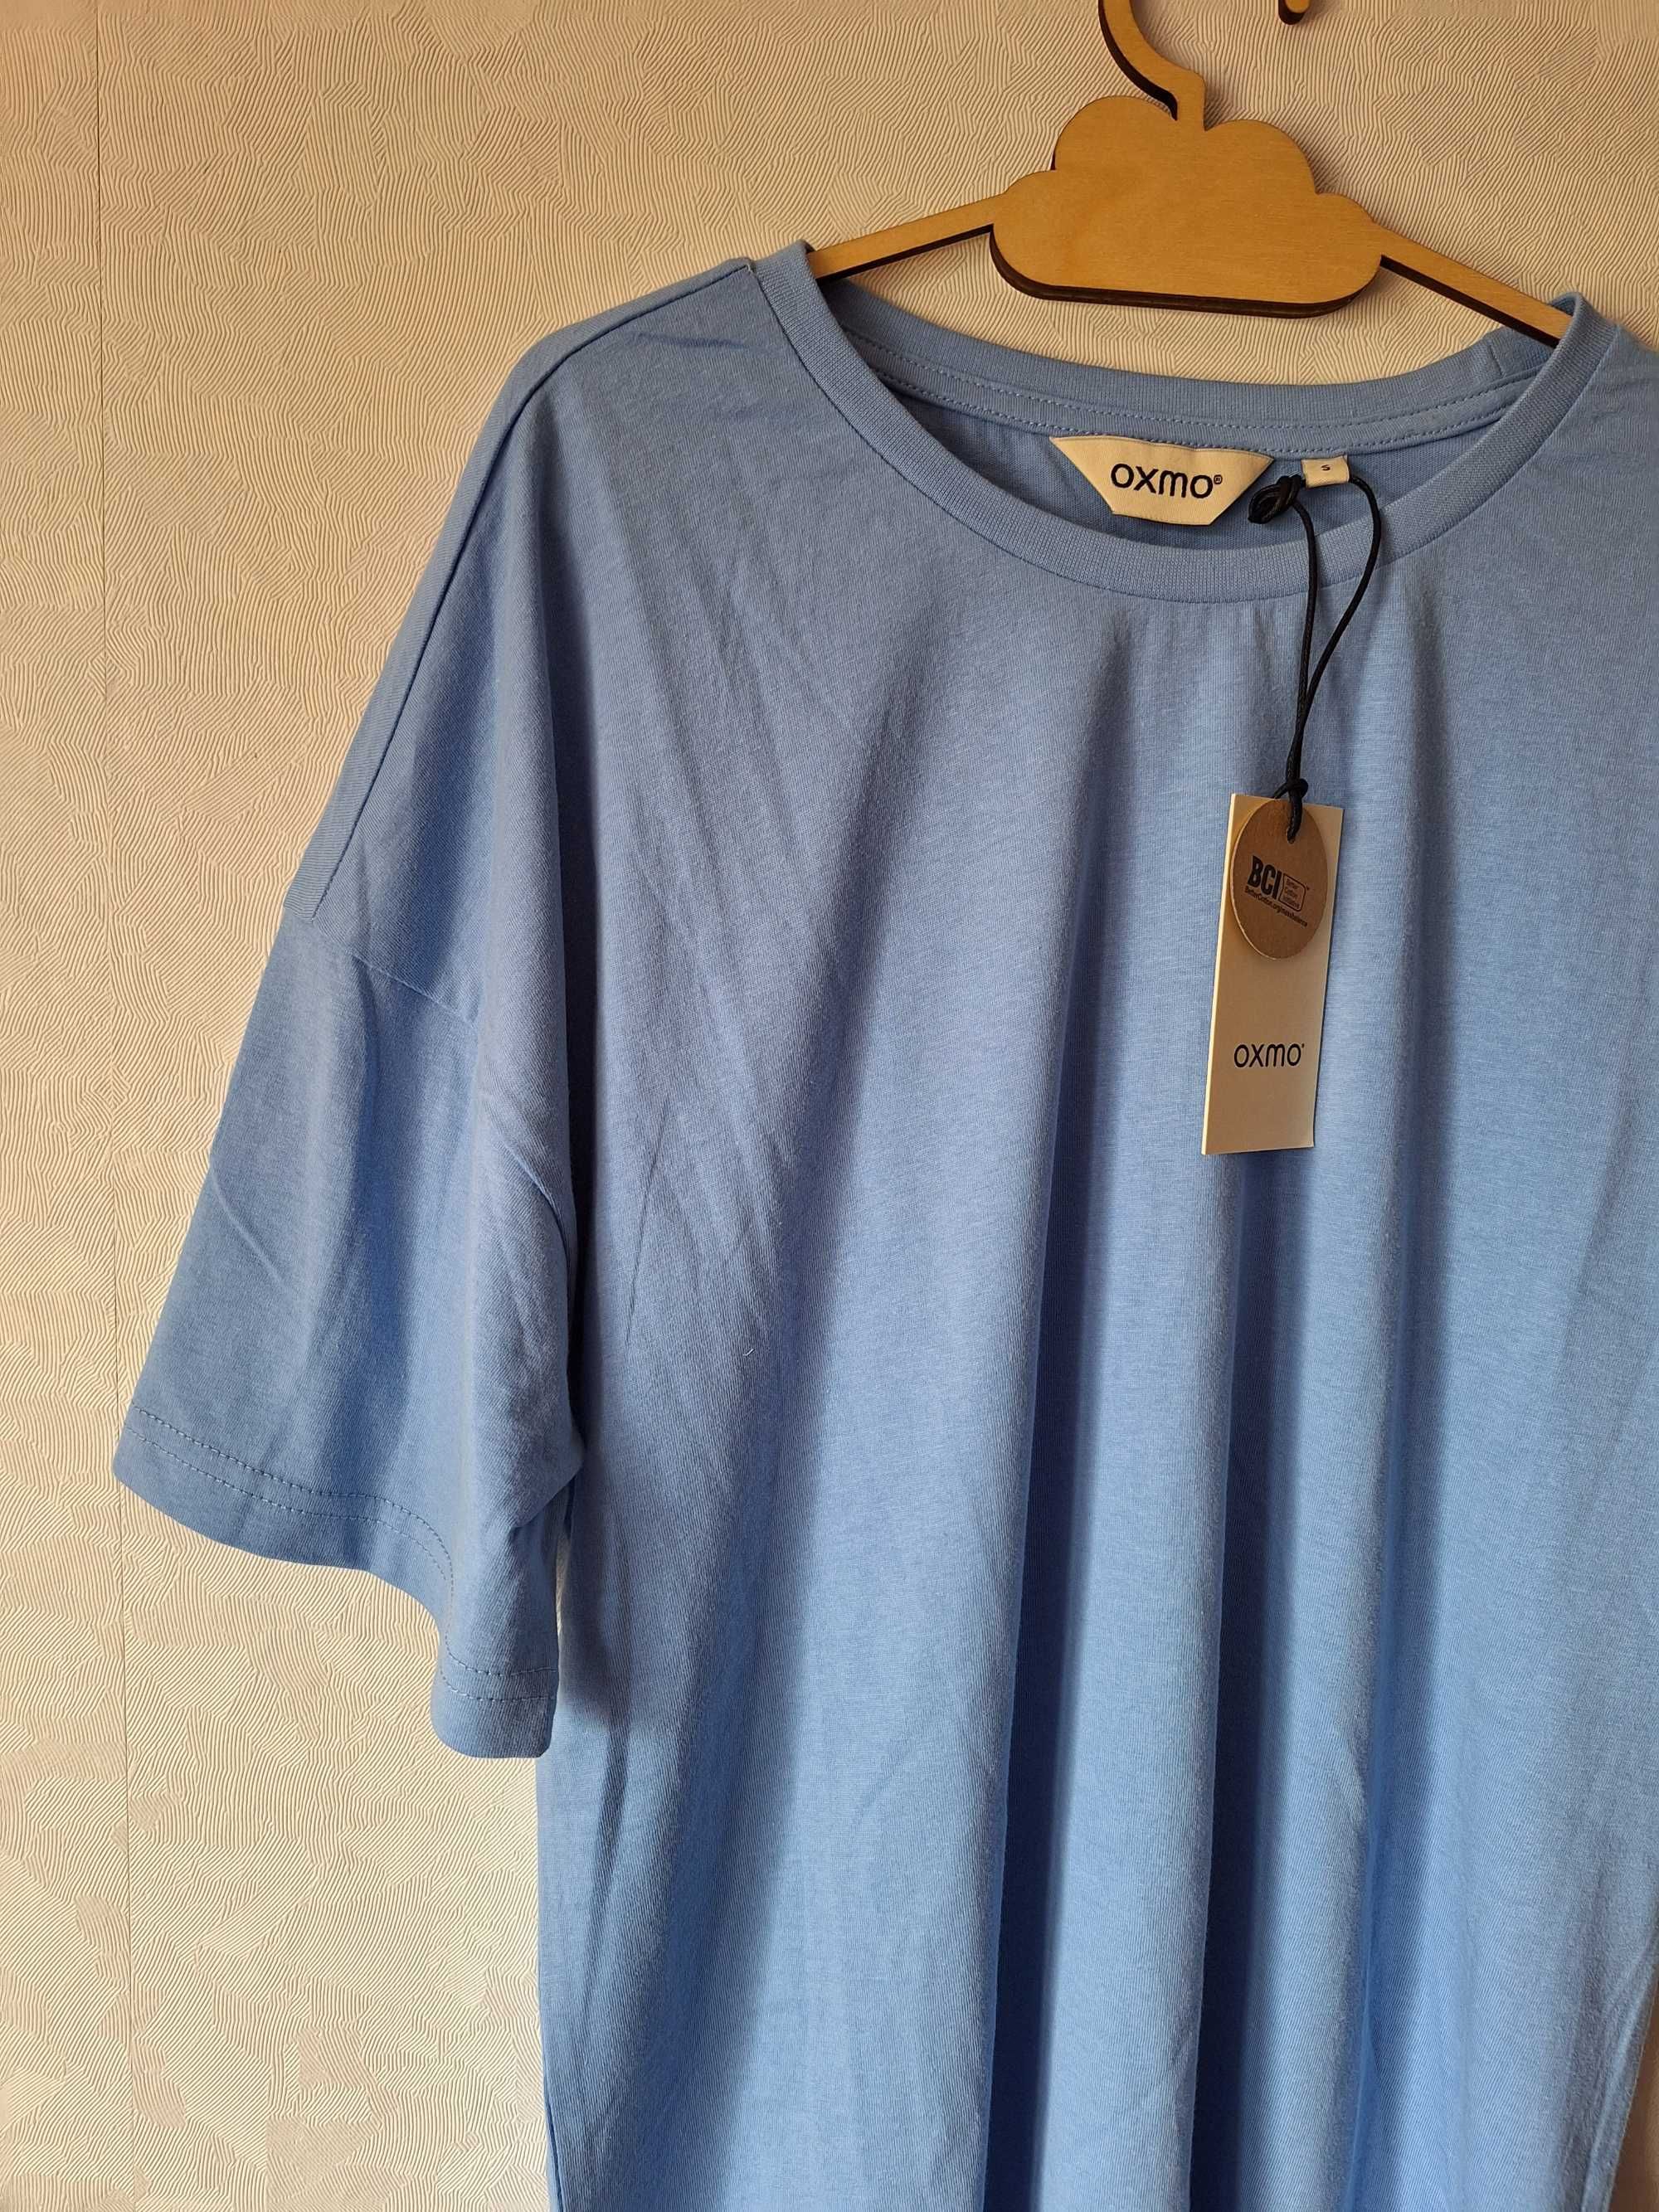 Jasnoniebieski t - shirt oversize L Oxmo klasyczny nowy bawełniany